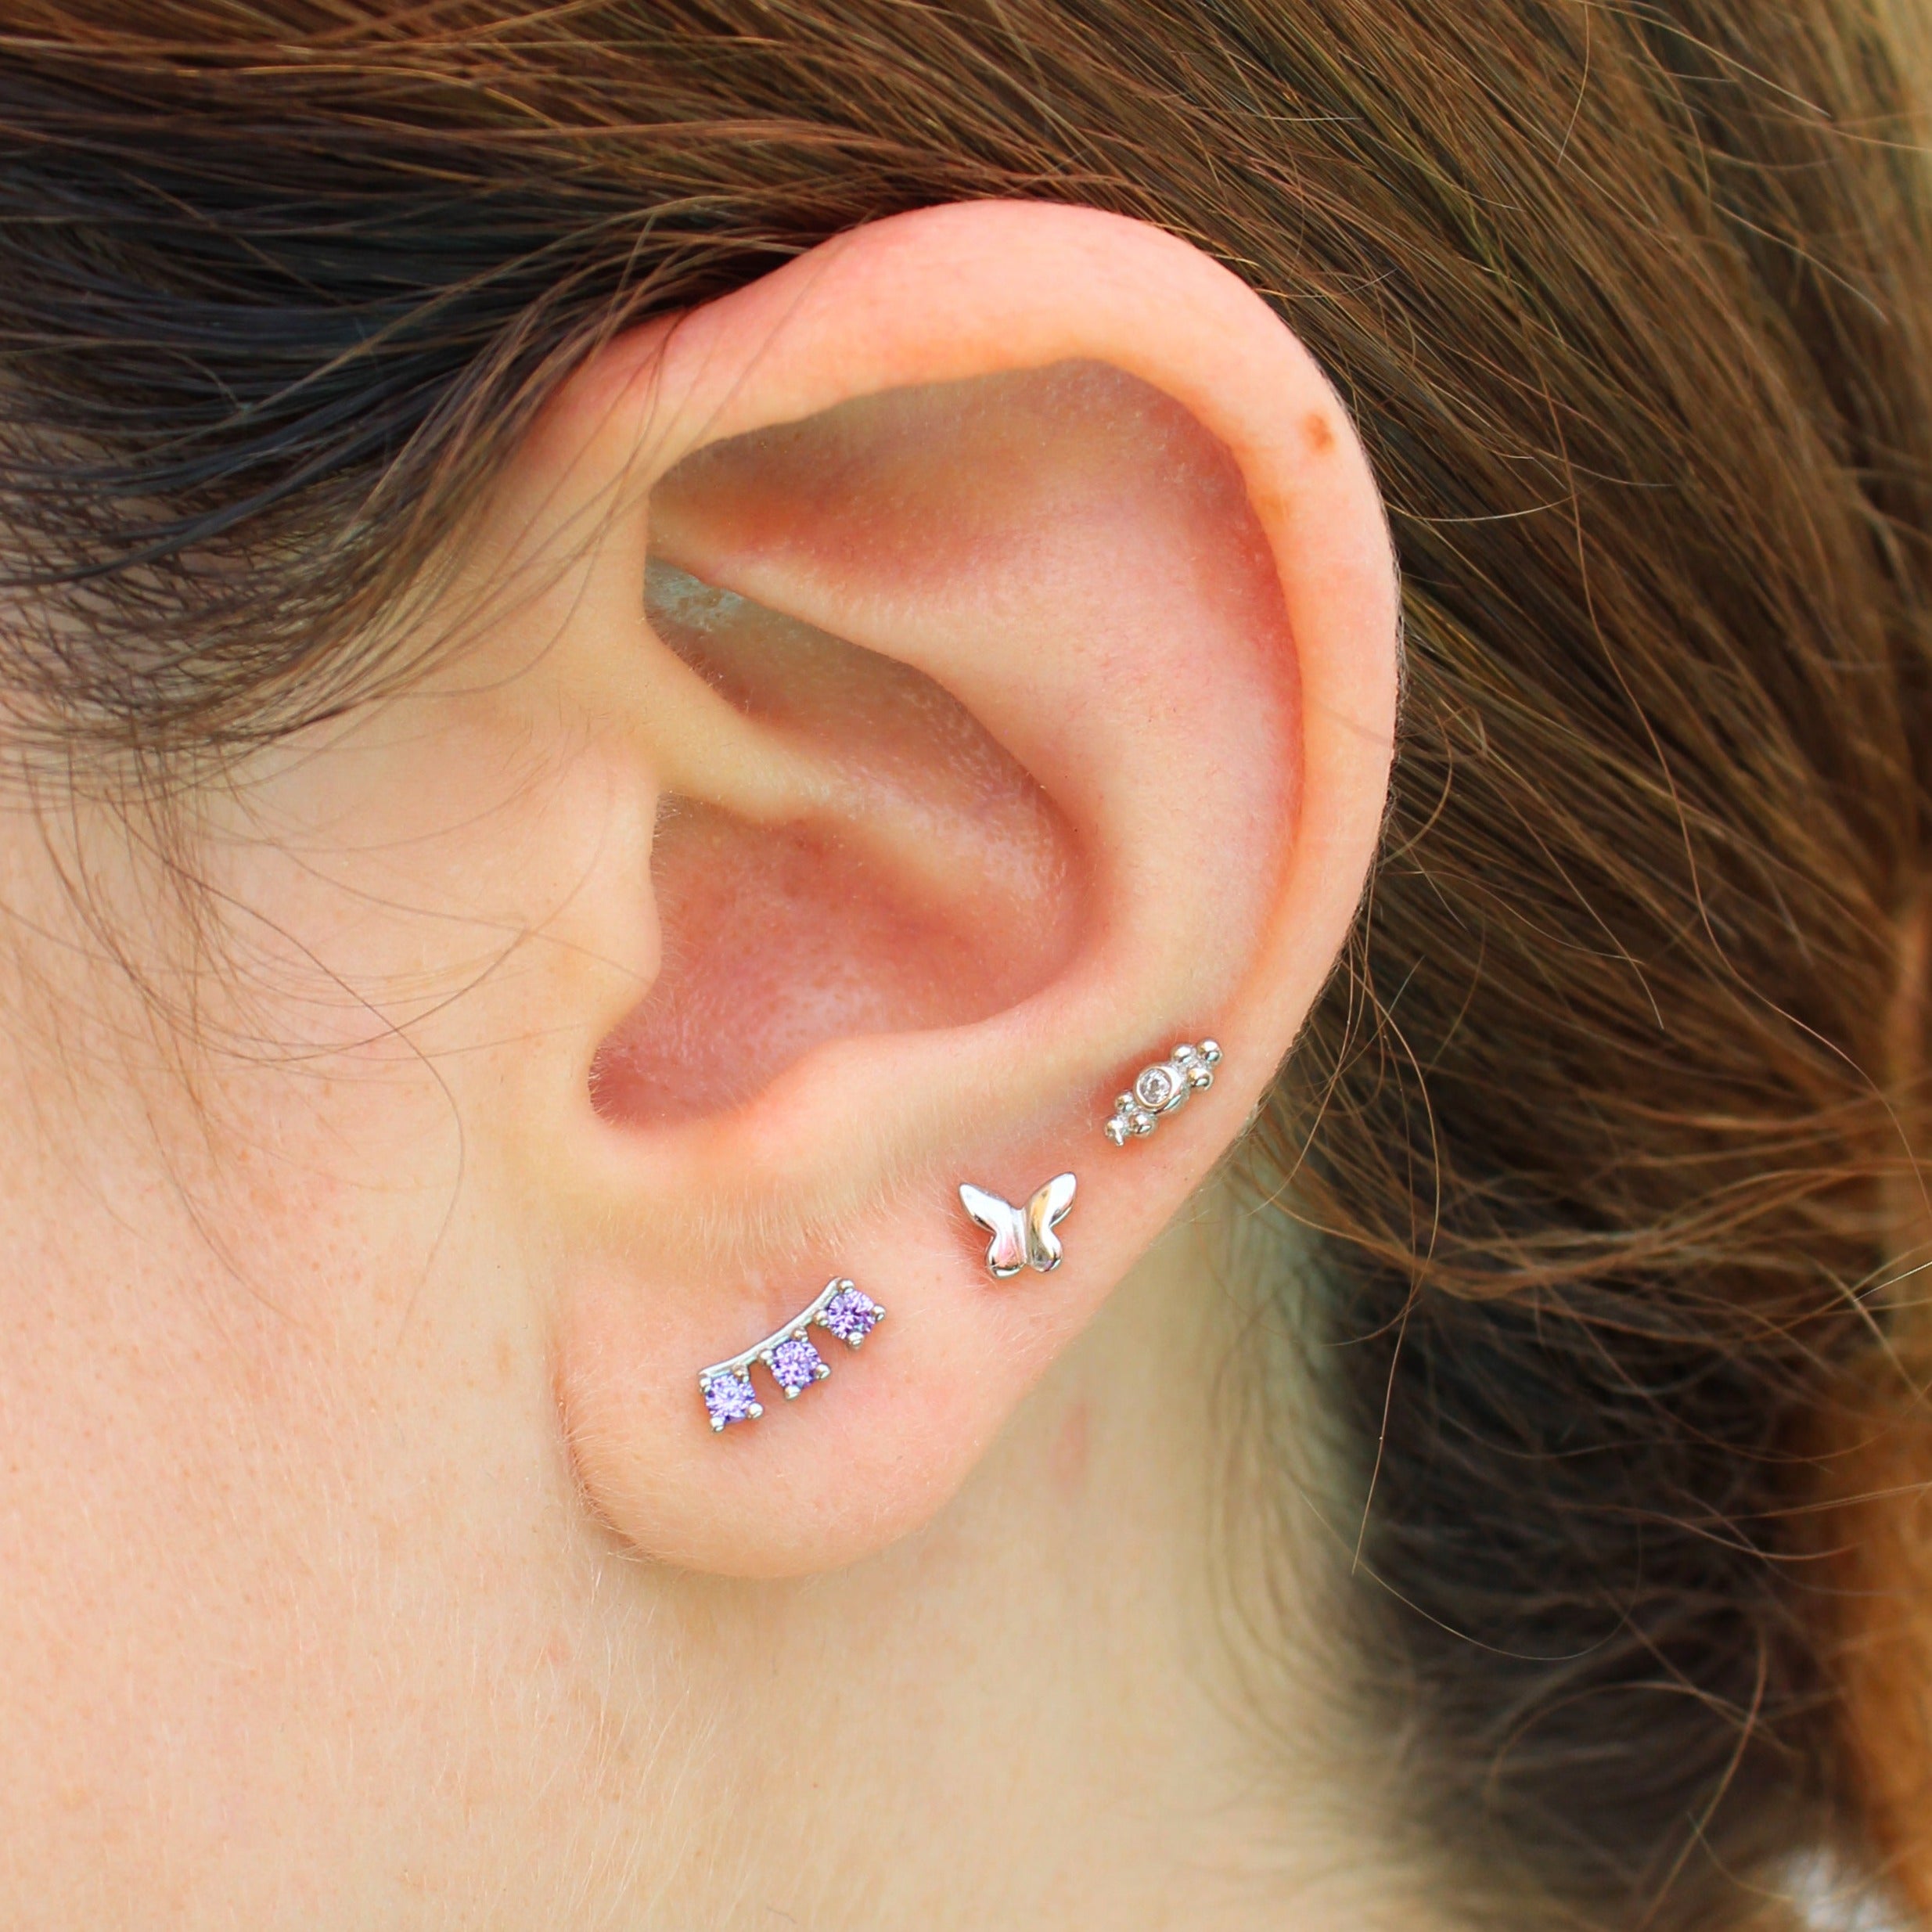 Moon shaped ear piercing piercings online